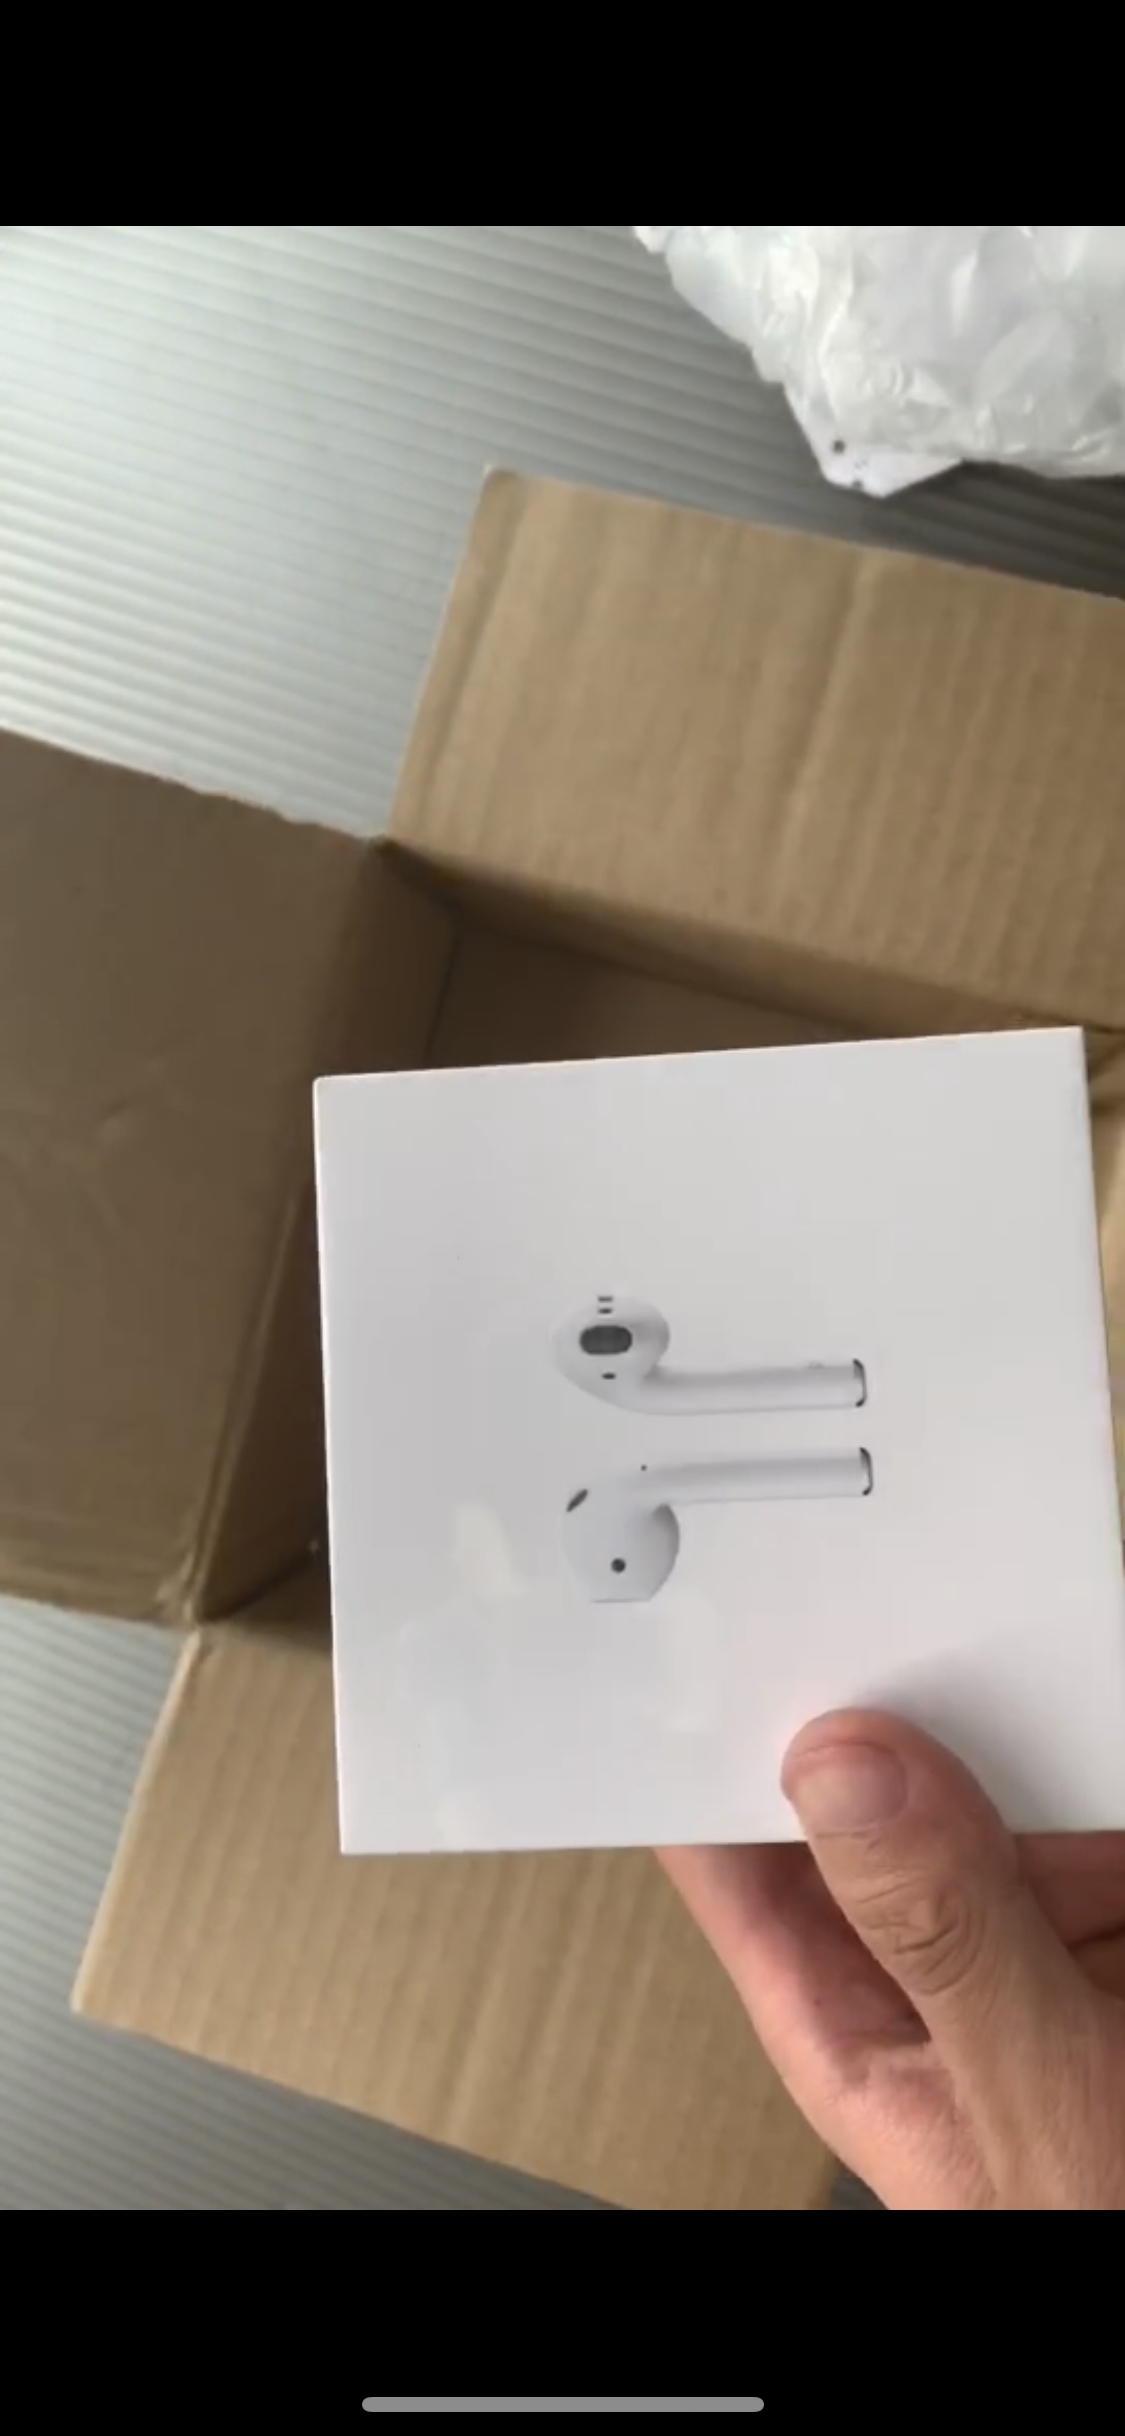 【全新原封正品】apple airpods 2代 苹果蓝牙耳塞式无线耳机 带无线